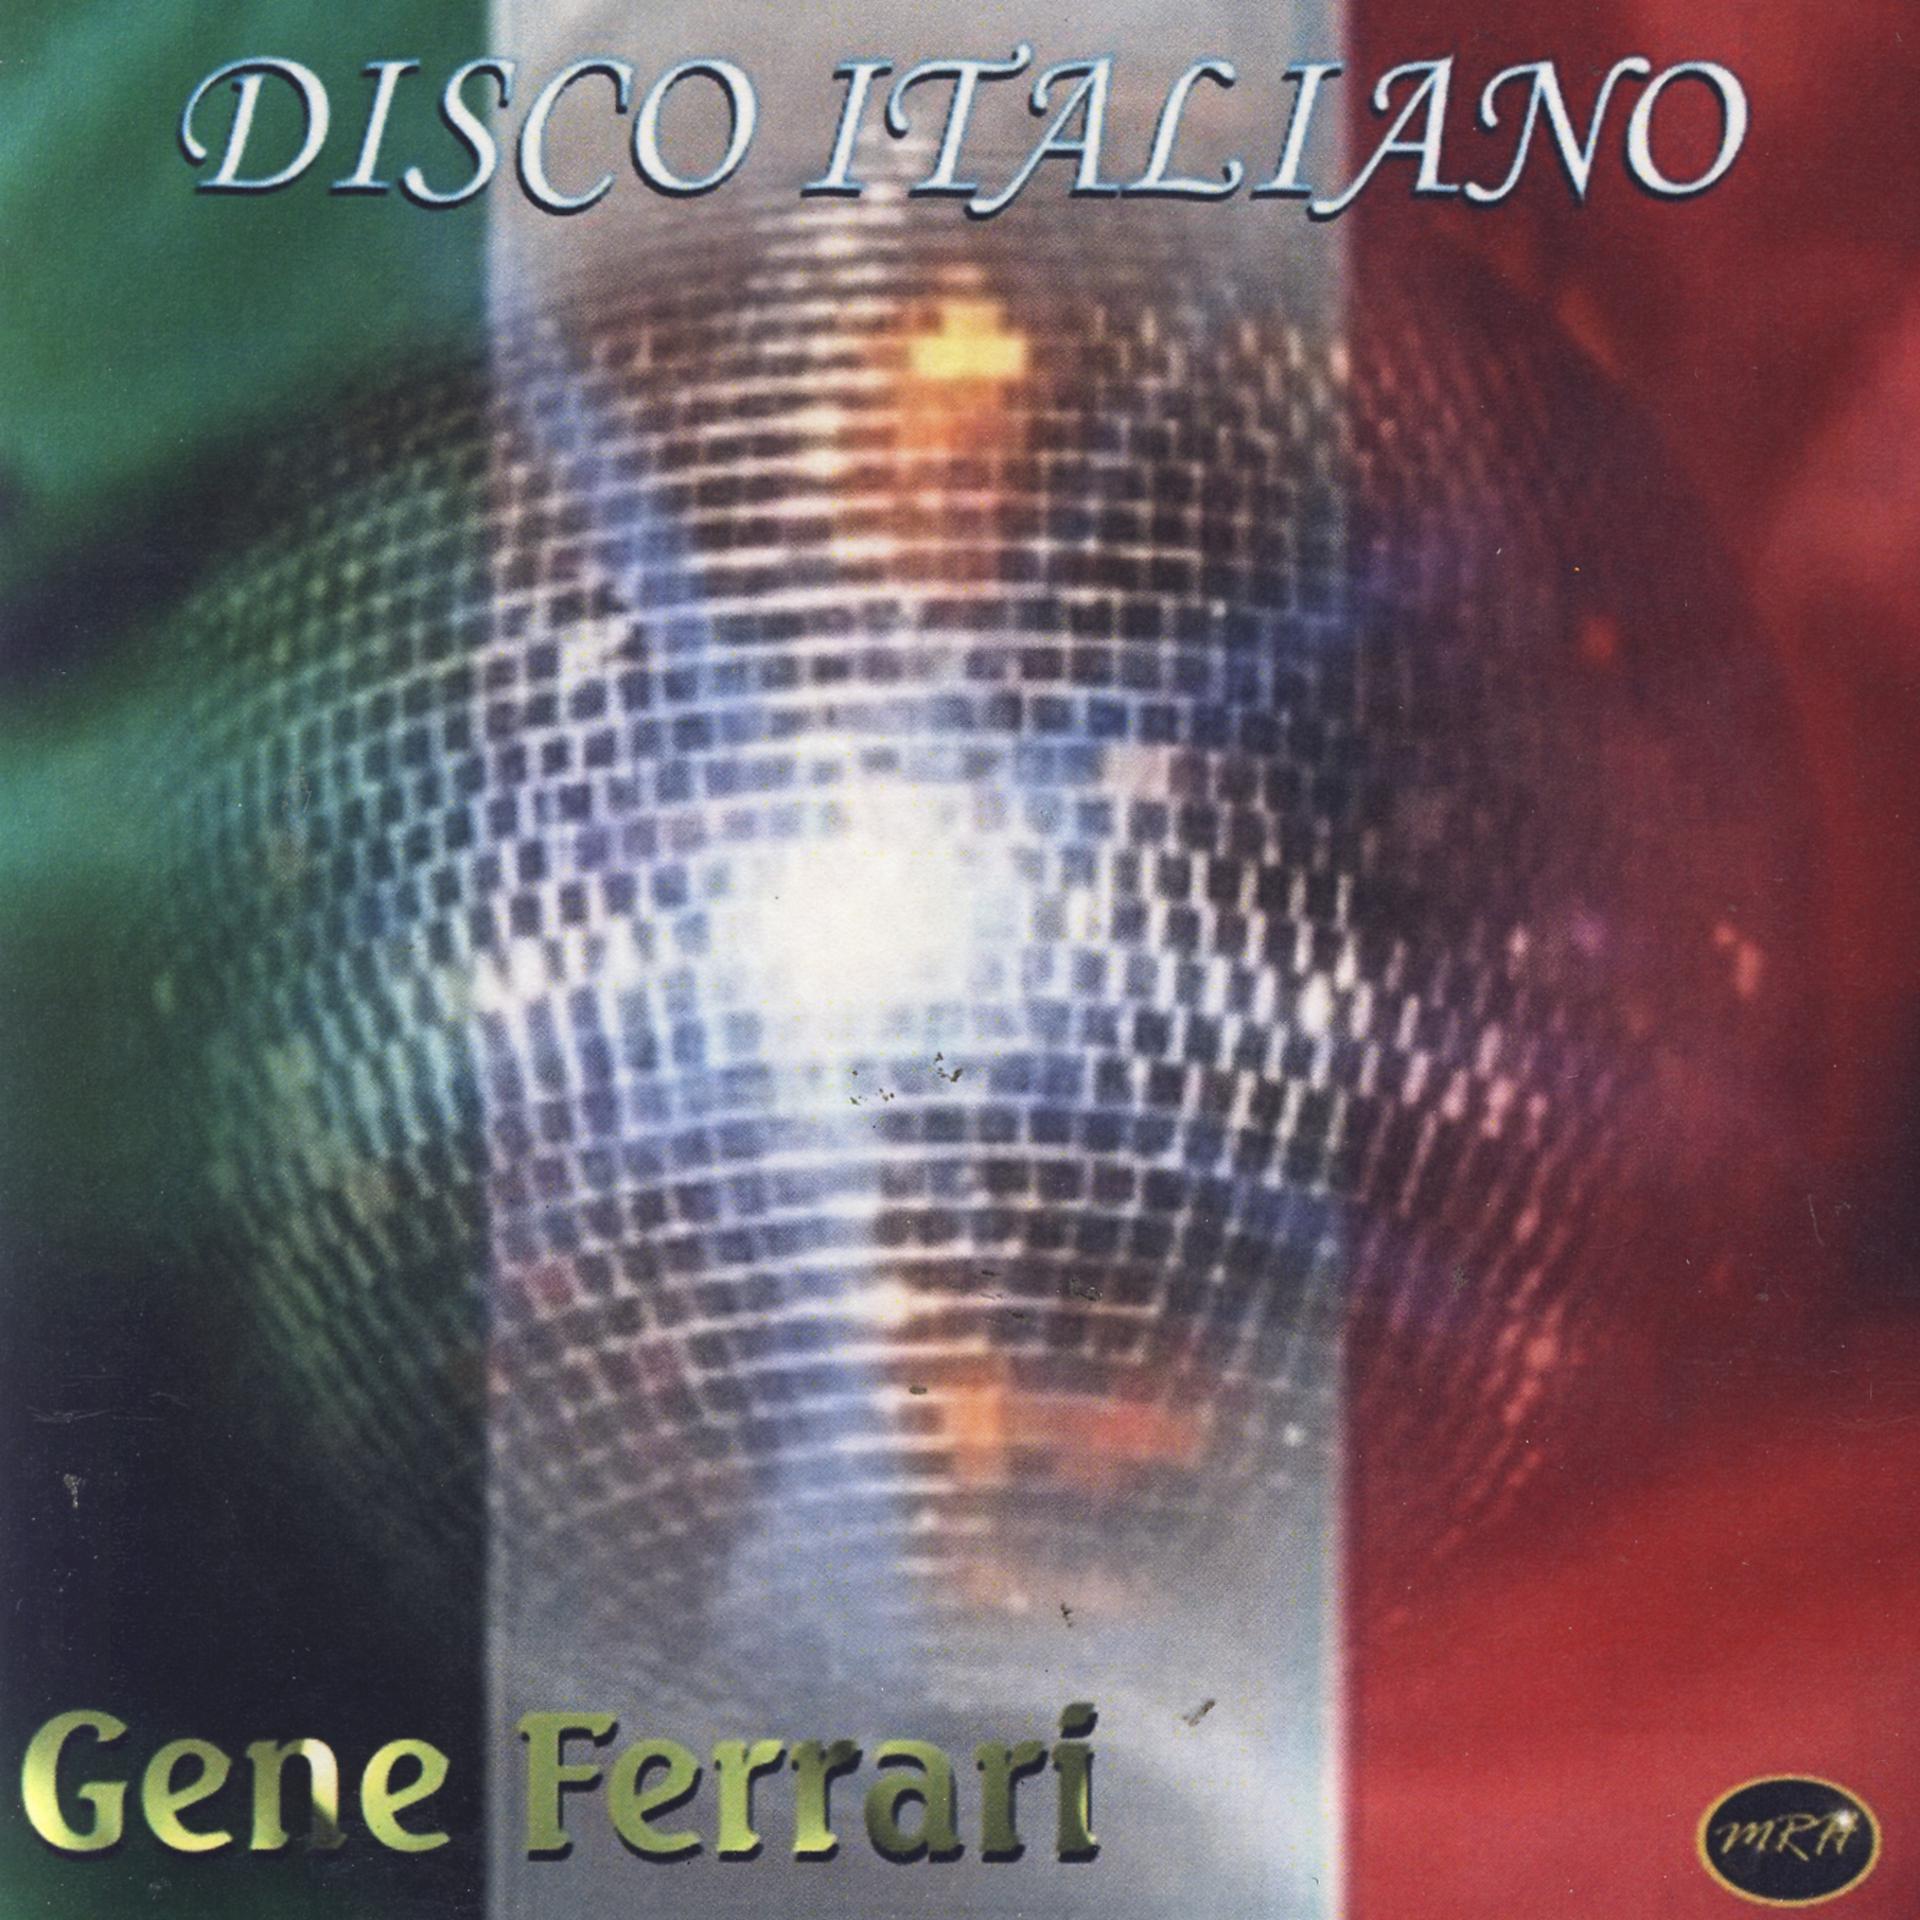 Итальянский диско слушать. Italian Disco фото. Итальянское диско ремиксы. Диско Феррари.